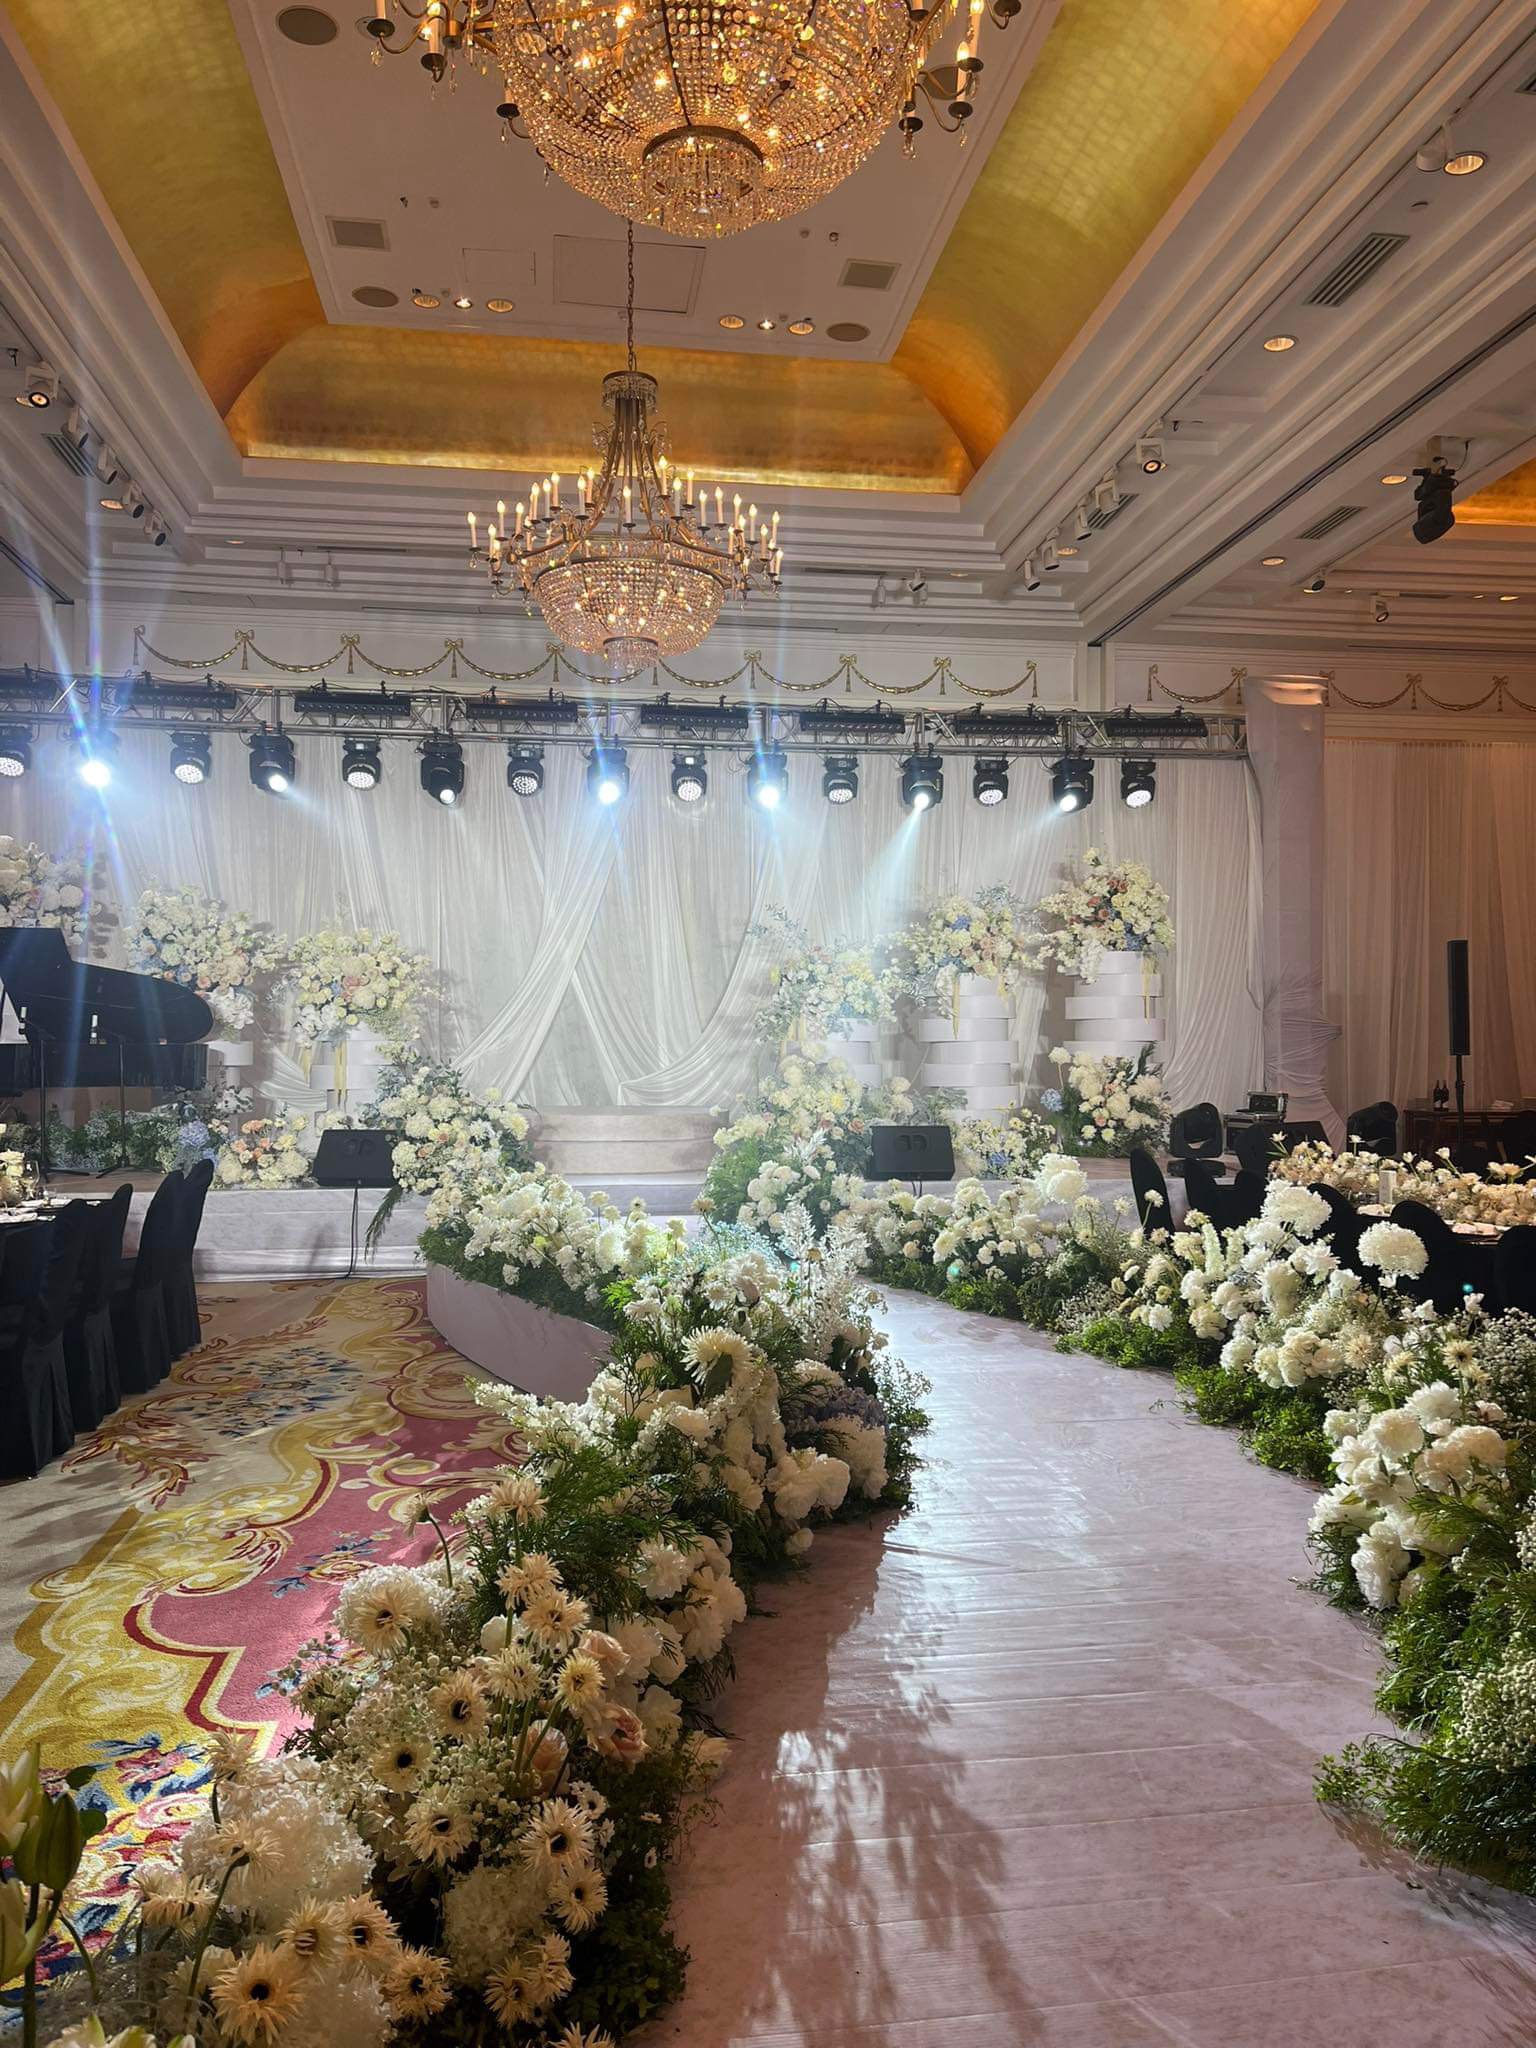 Cập nhật từ đám cưới Thanh Hằng: Không gian phủ hoa tươi, những khách mời đầu tiên đã xuất hiện-1